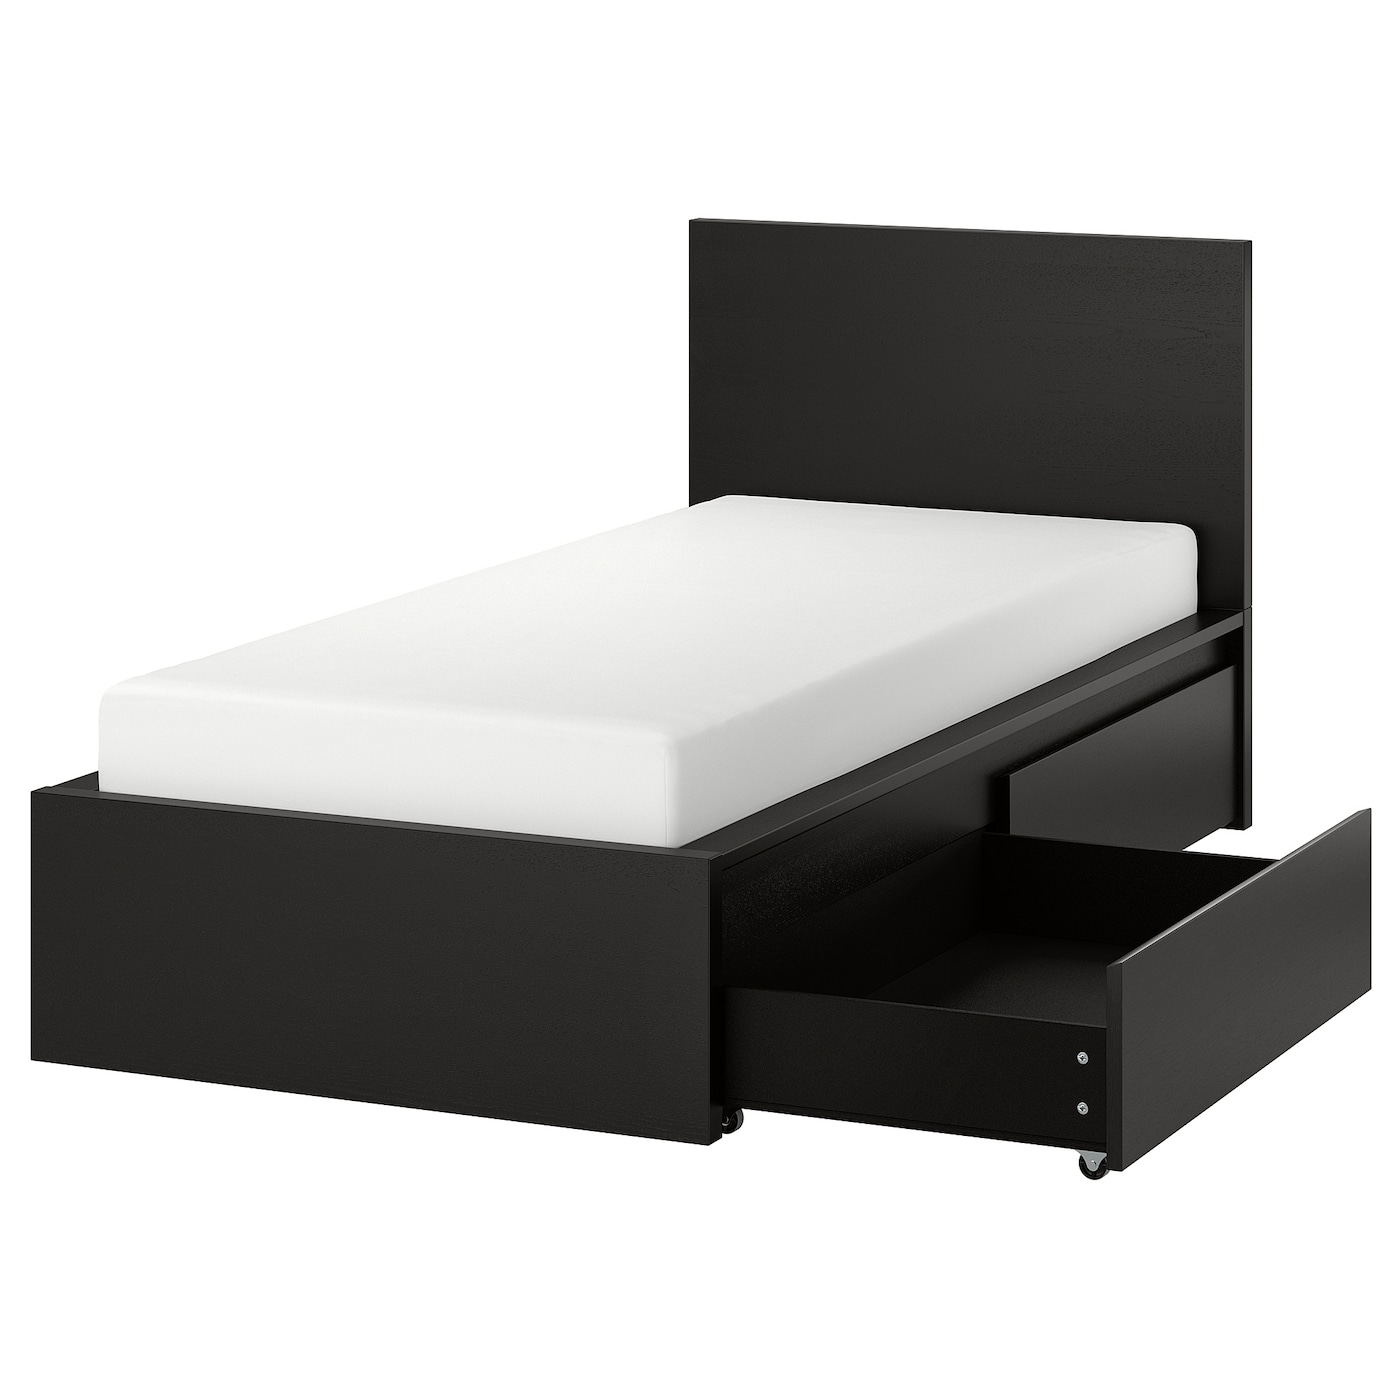 Каркас кровати с 2 ящиками для хранения - IKEA MALM, 200х90 см, черный, МАЛЬМ ИКЕА